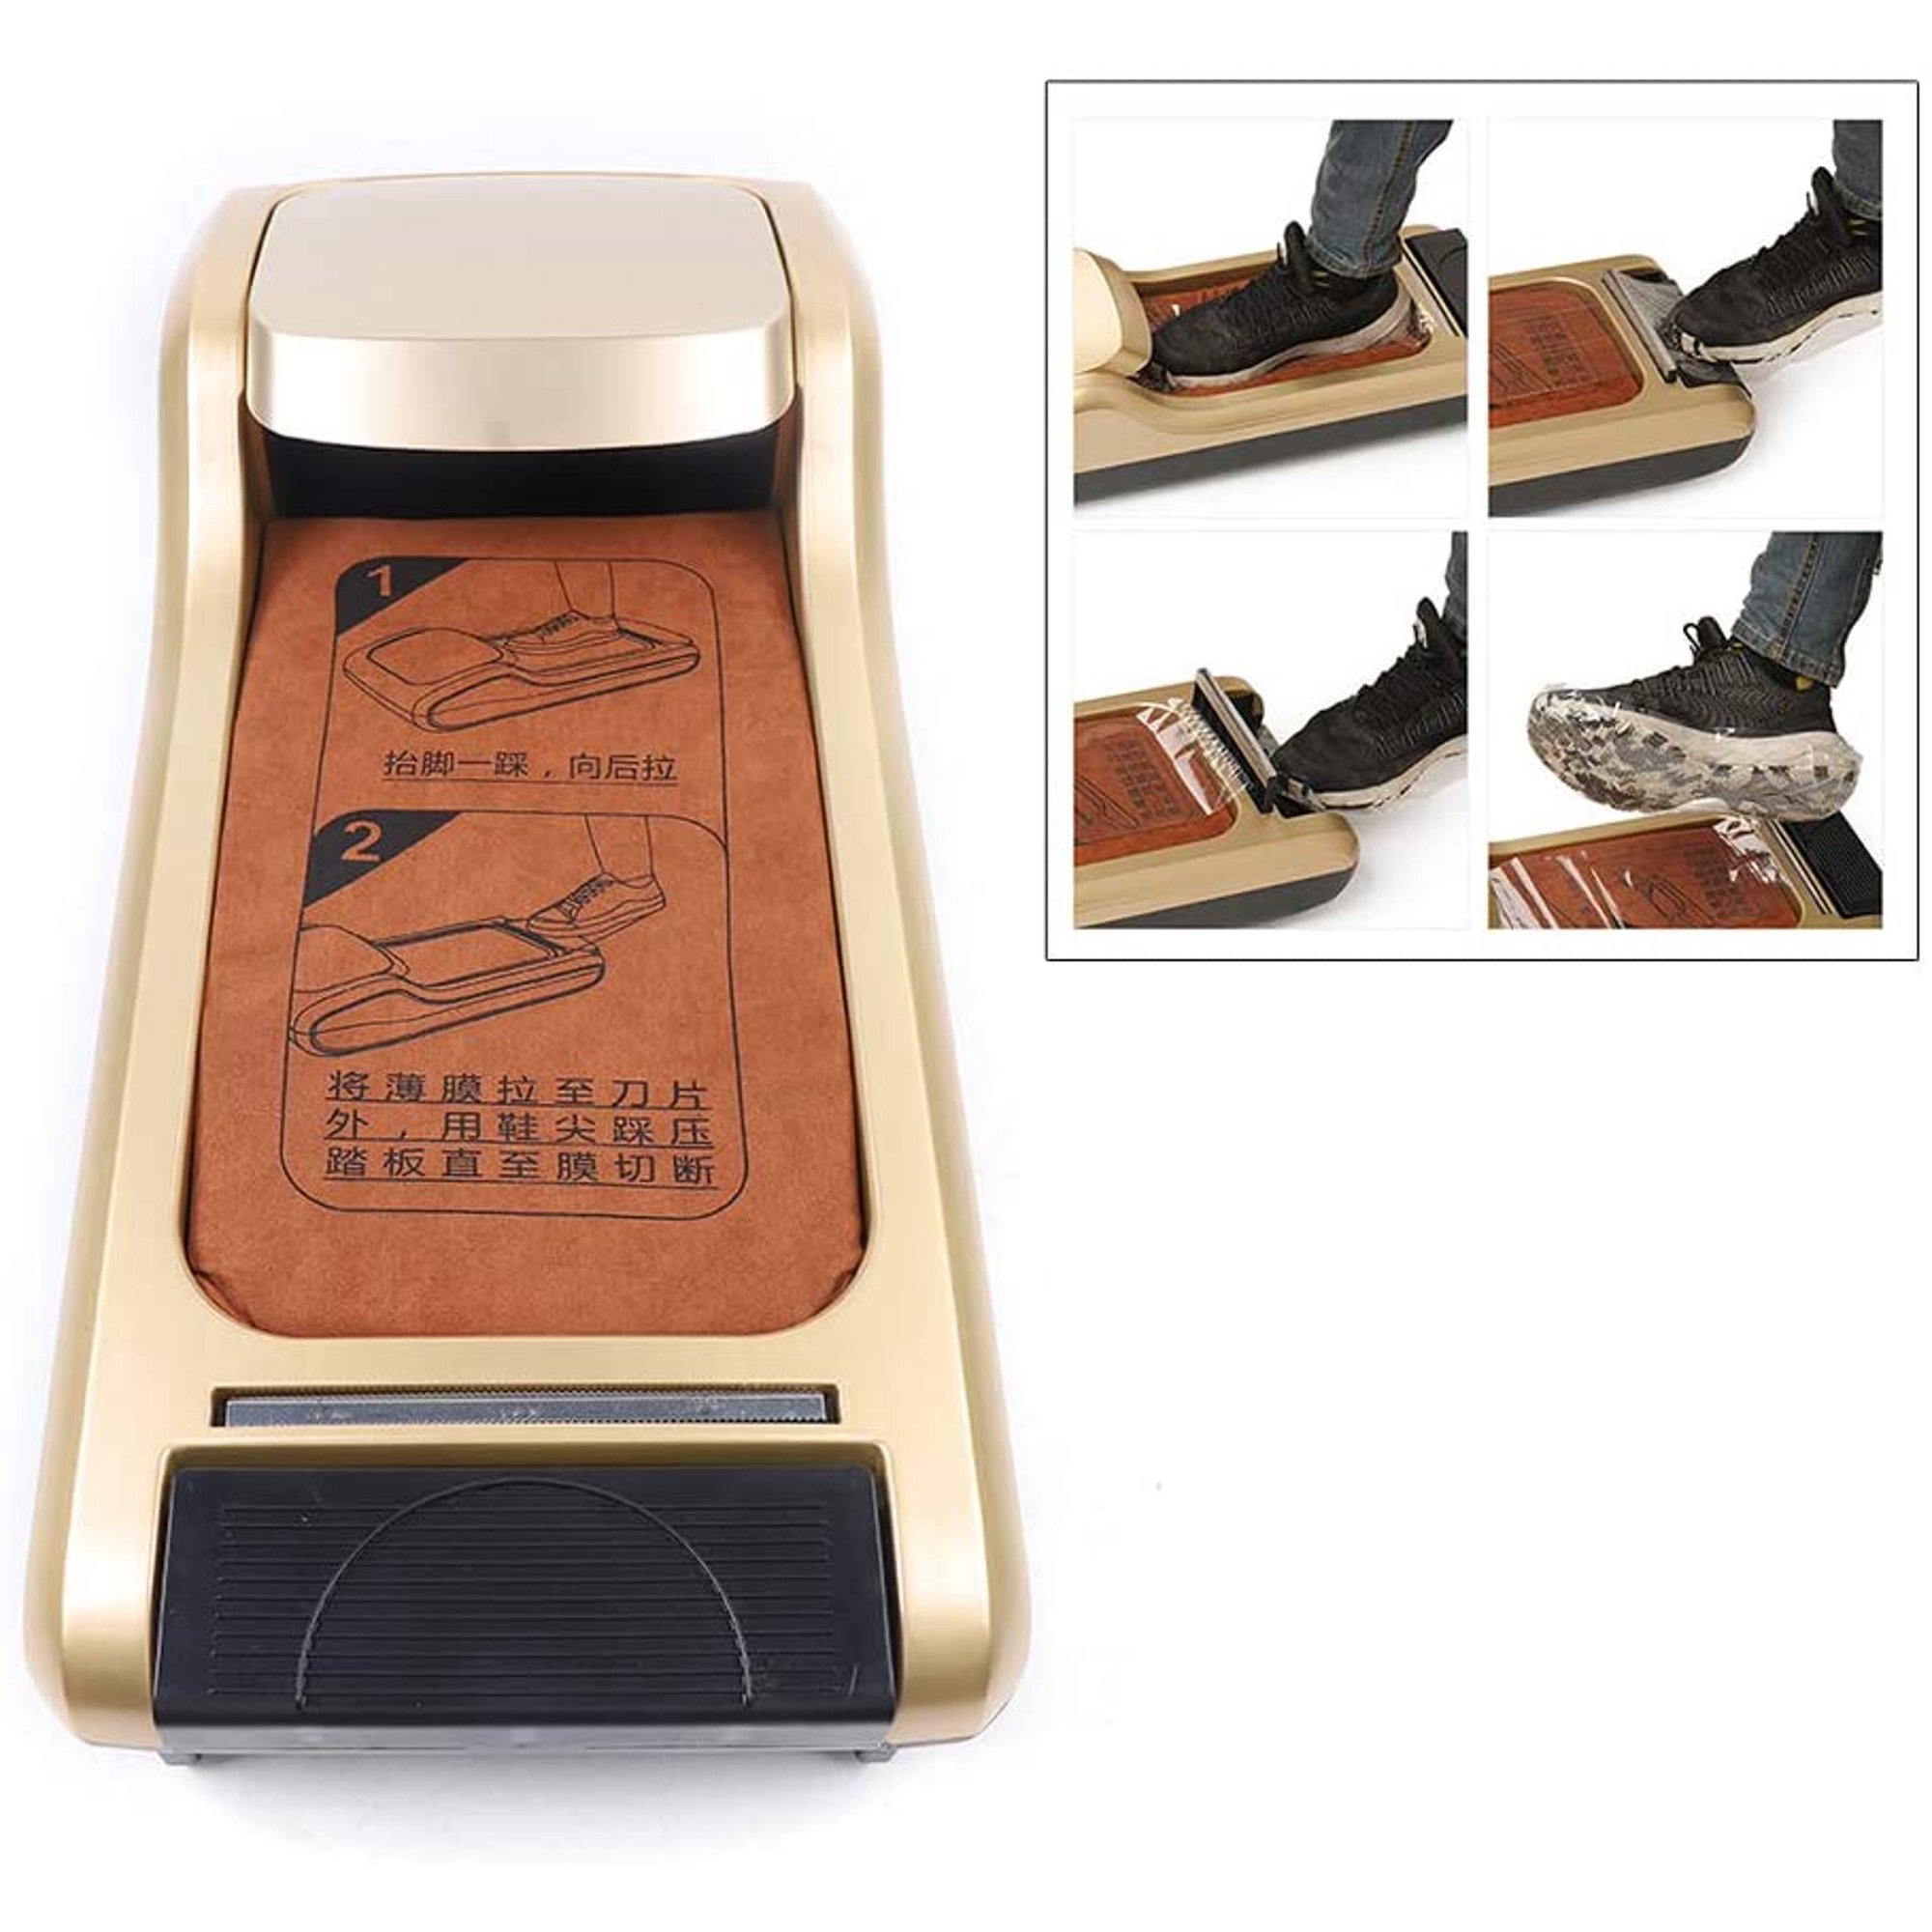 Ken Kou - Shoe Cover Dispenser Model: SR-M (031)